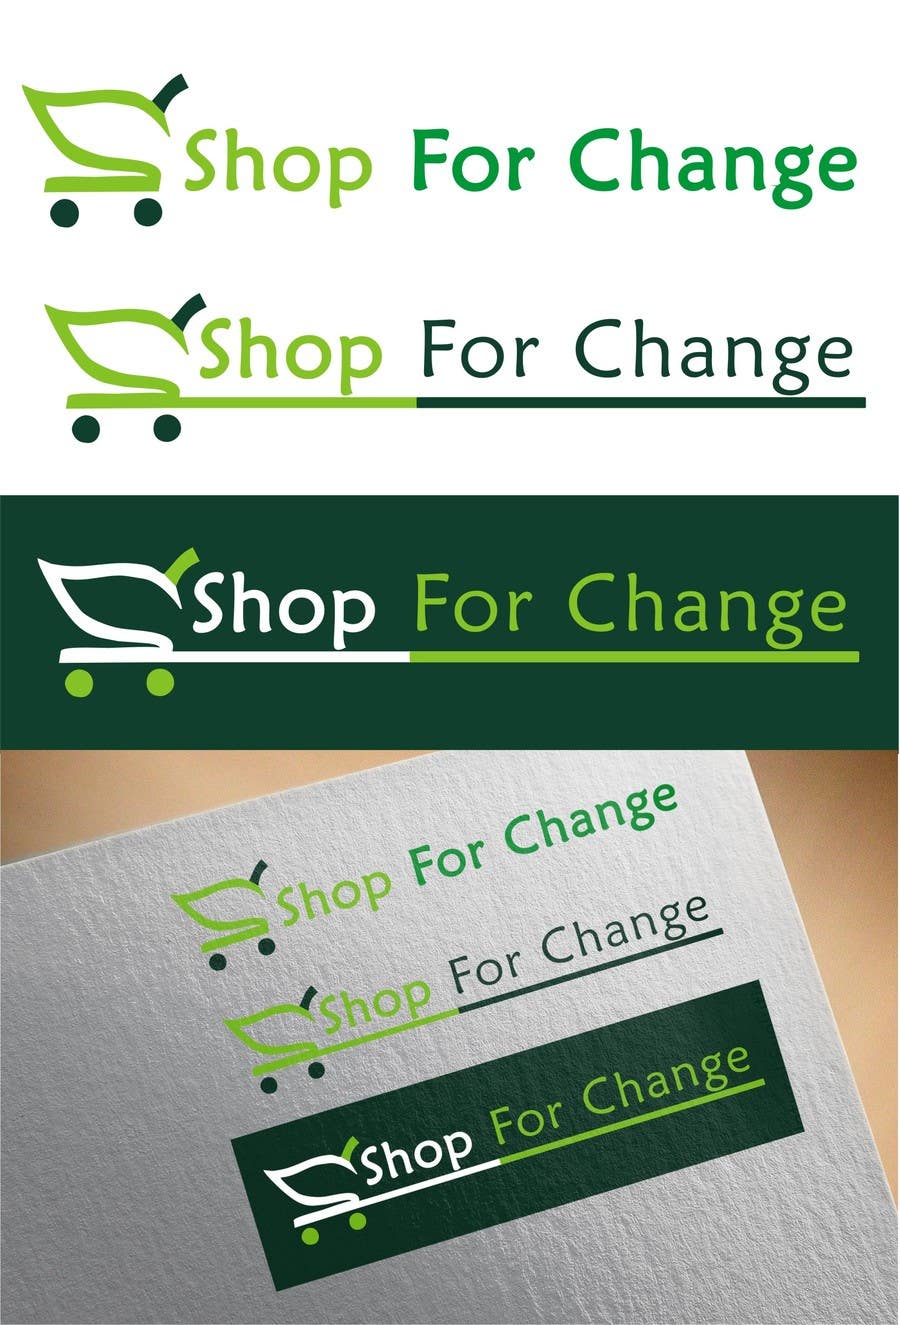 Konkurrenceindlæg #25 for                                                 Design a Logo for "Shop for Change"
                                            